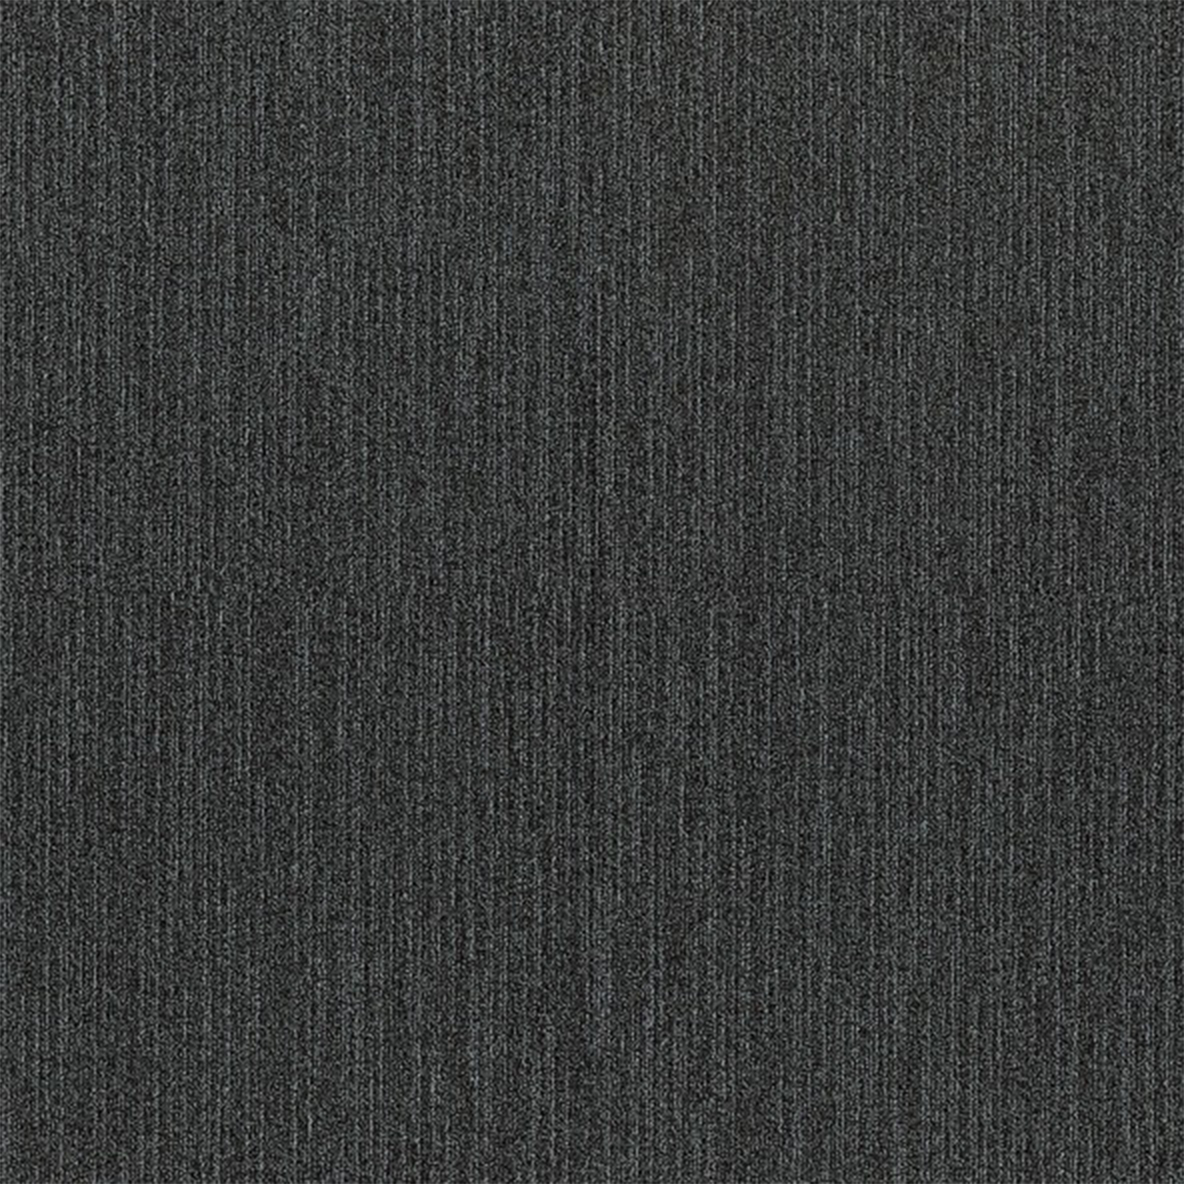 Overdirve Commercial Carpet Tile .30 Inch x 50x50 cm per Tile Shadow color close up